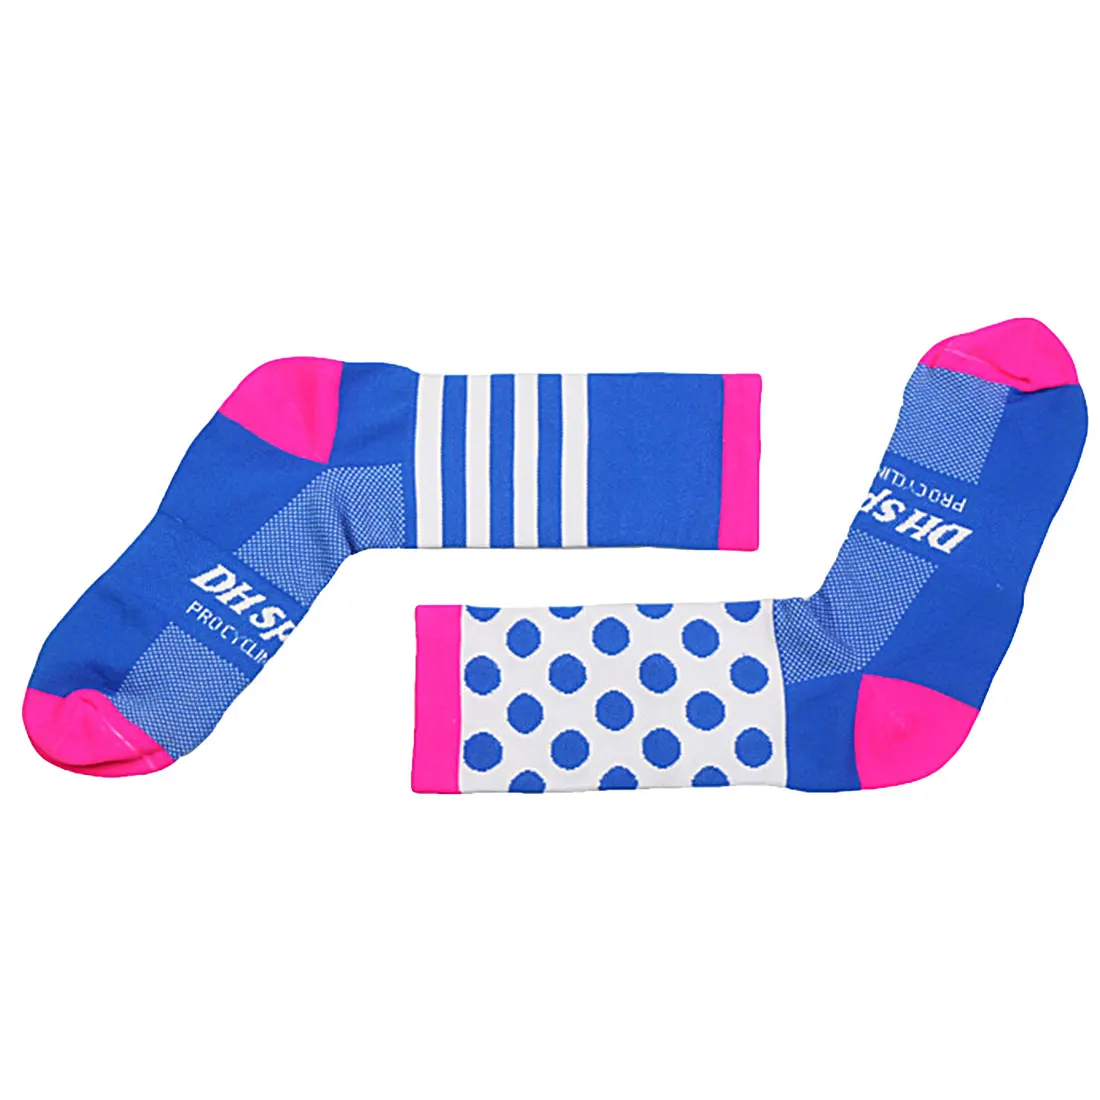 Горячее предложение Высокое качество Профессиональный Велоспорт носки COMFORTABL дорожный велосипед носки Открытый бренда гоночный велосипед Компрессионные носки - Цвет: Pink blue